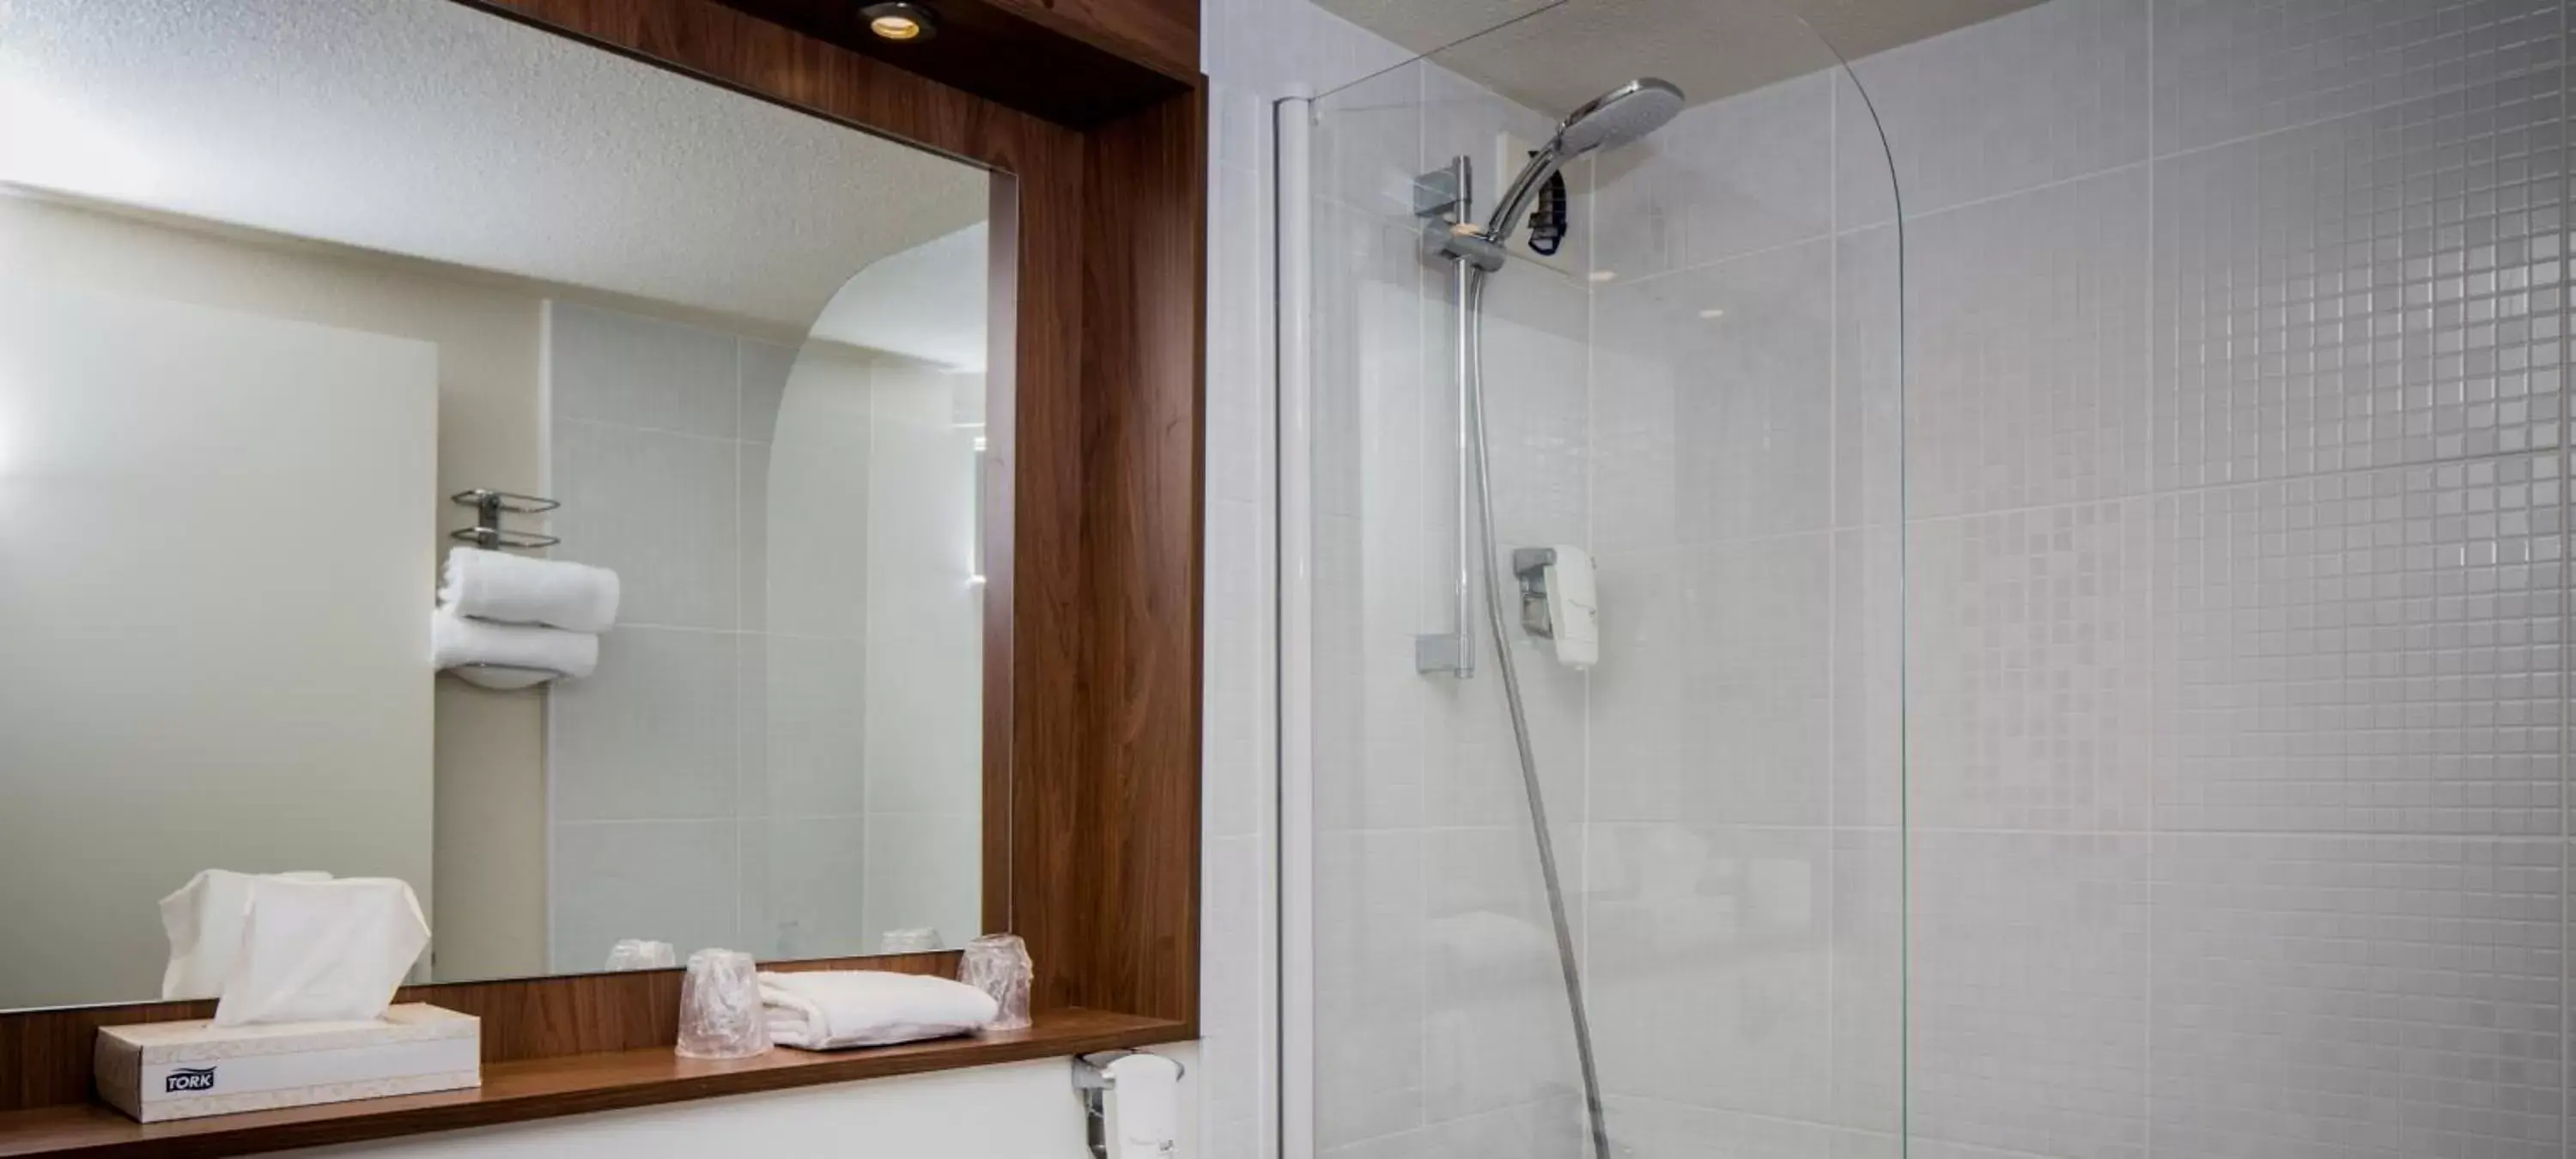 Shower, Bathroom in Kyriad Montargis Amilly